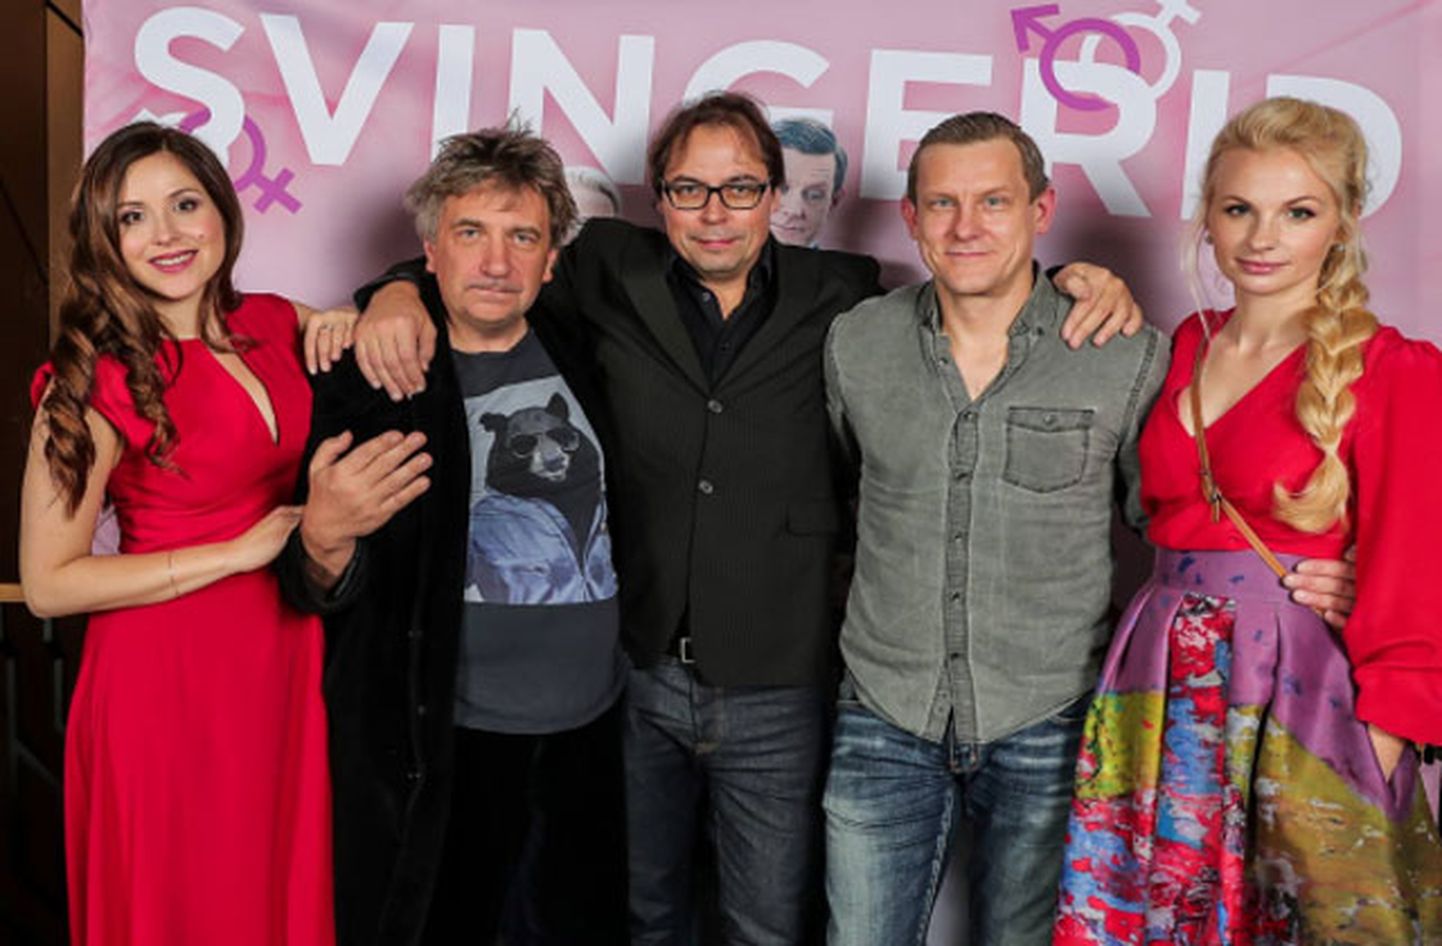 Filmas "Svingeri" Latvijas pirmizrāde ar aktieriem 2016. gadā.
No kreisās: Jekaterina Novosjolova, Andrejs Ēķis, Timo Diener (izplatītājs Igaunijā), Jan Uuspold, Elina Purde.